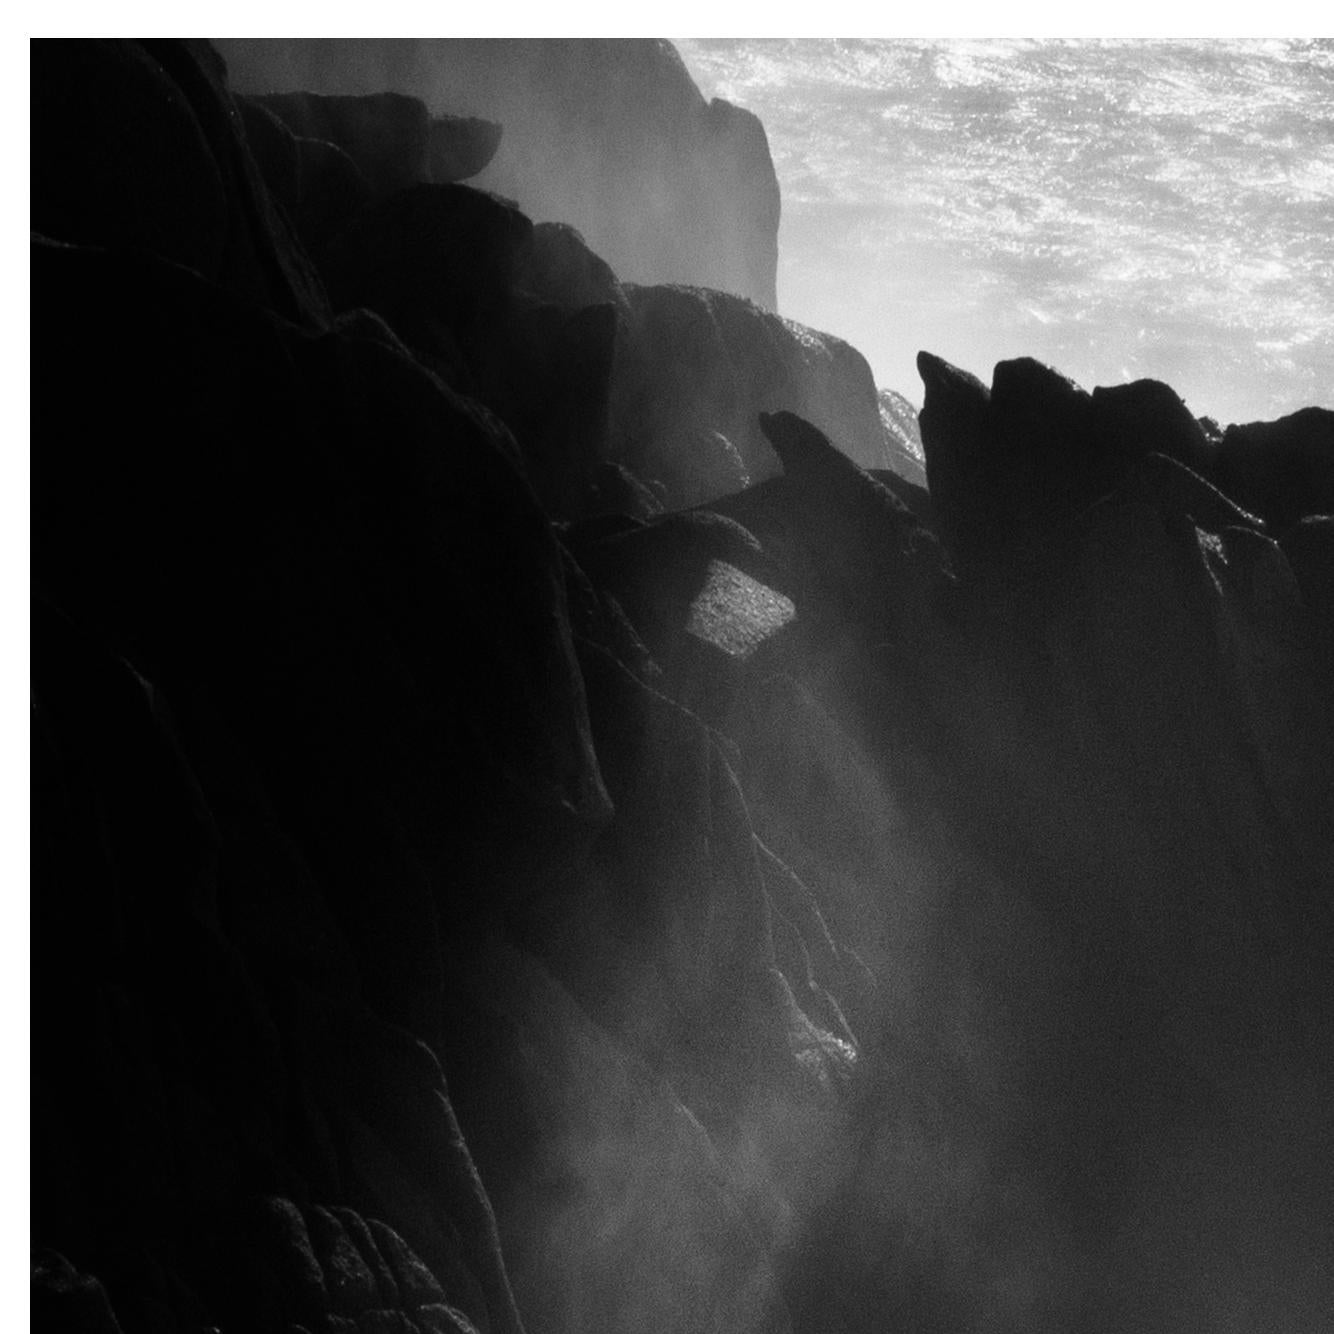 Synthèse 
Photographie d'archives en noir et blanc à tirage limité. Non encadré
_________________
L'Atlantique sauvage explose dans une libération d'énergie brute, brouillant la frontière entre l'océan, le ciel et la terre. L'eau, la terre et l'air